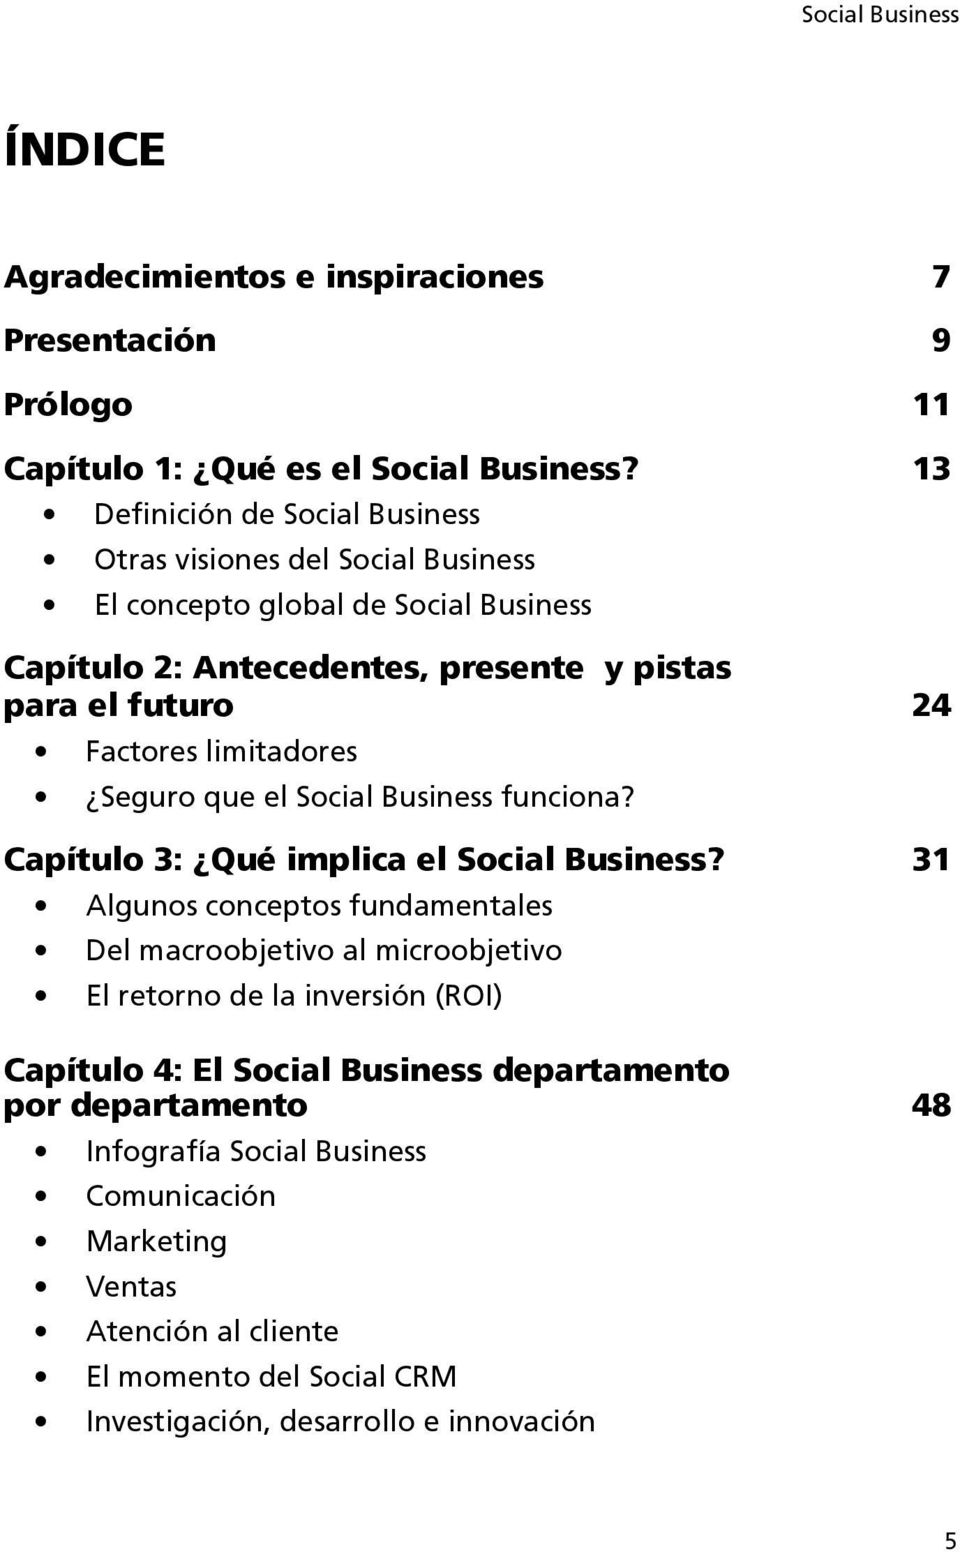 limitadores Seguro que el Social Business funciona? Capítulo 3: Qué implica el Social Business?